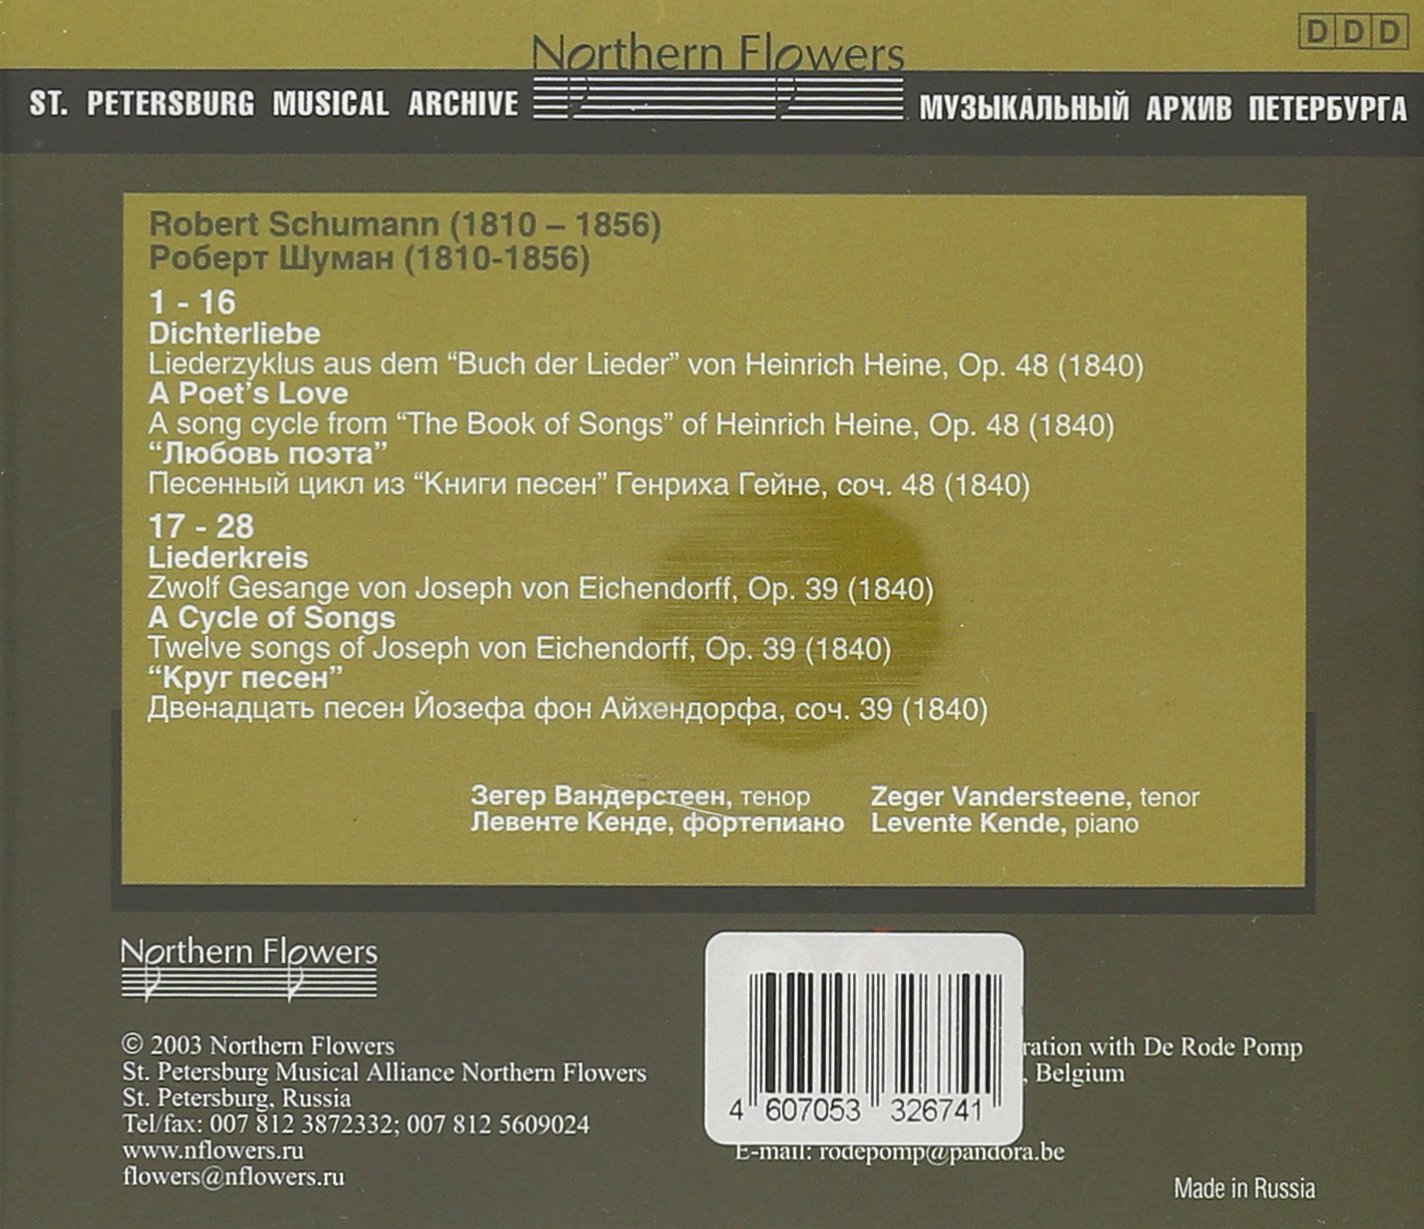 SCHUMANN: DICHTERLIEBE OP. 48; LIEDERKREIS LO.39 - Zeger Vandersteene (tenor), Levente Kende (piano)